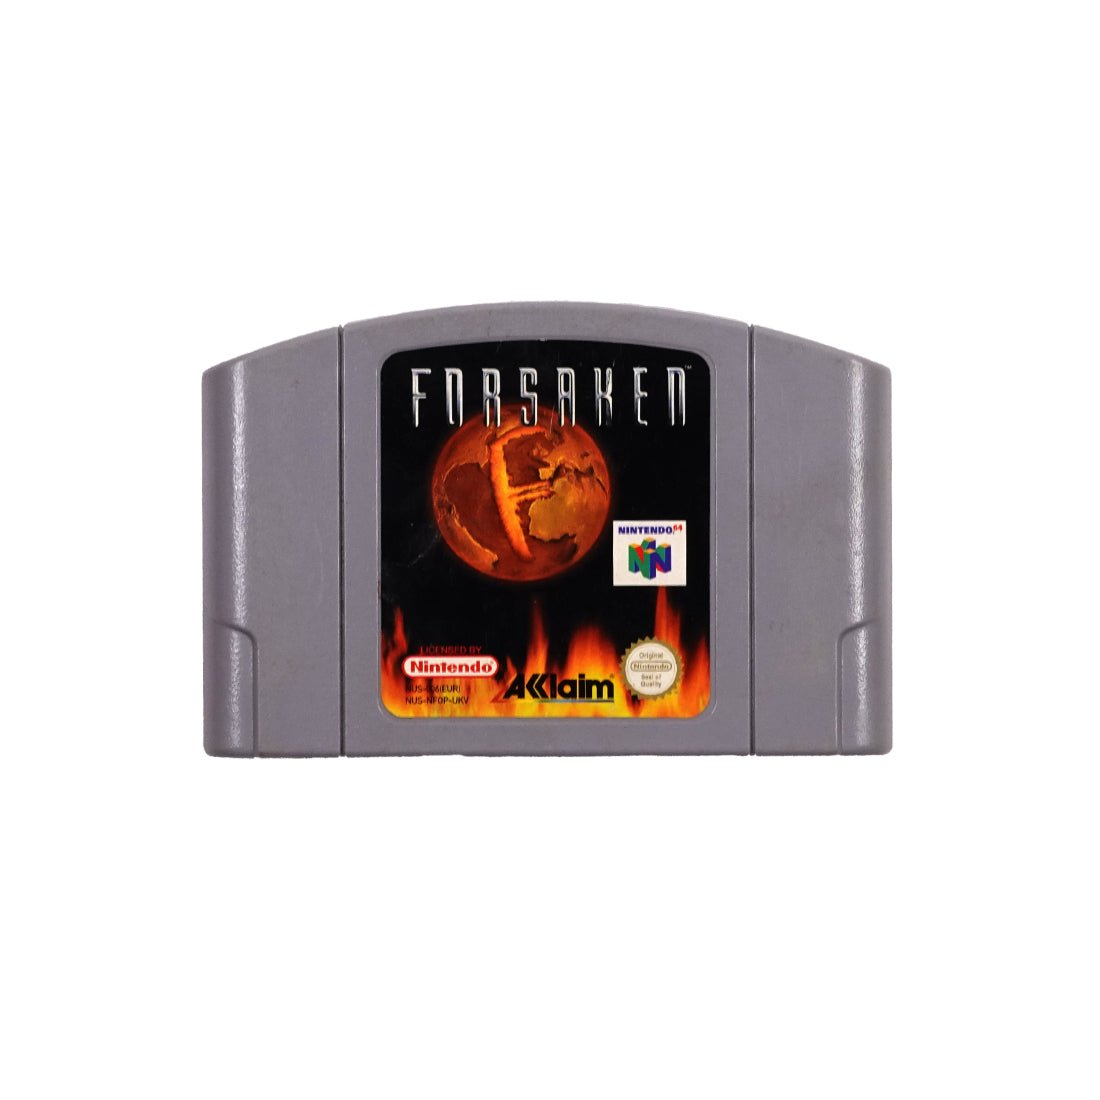 (Pre-Owned) Forsaken - Nintendo 64 - Store 974 | ستور ٩٧٤